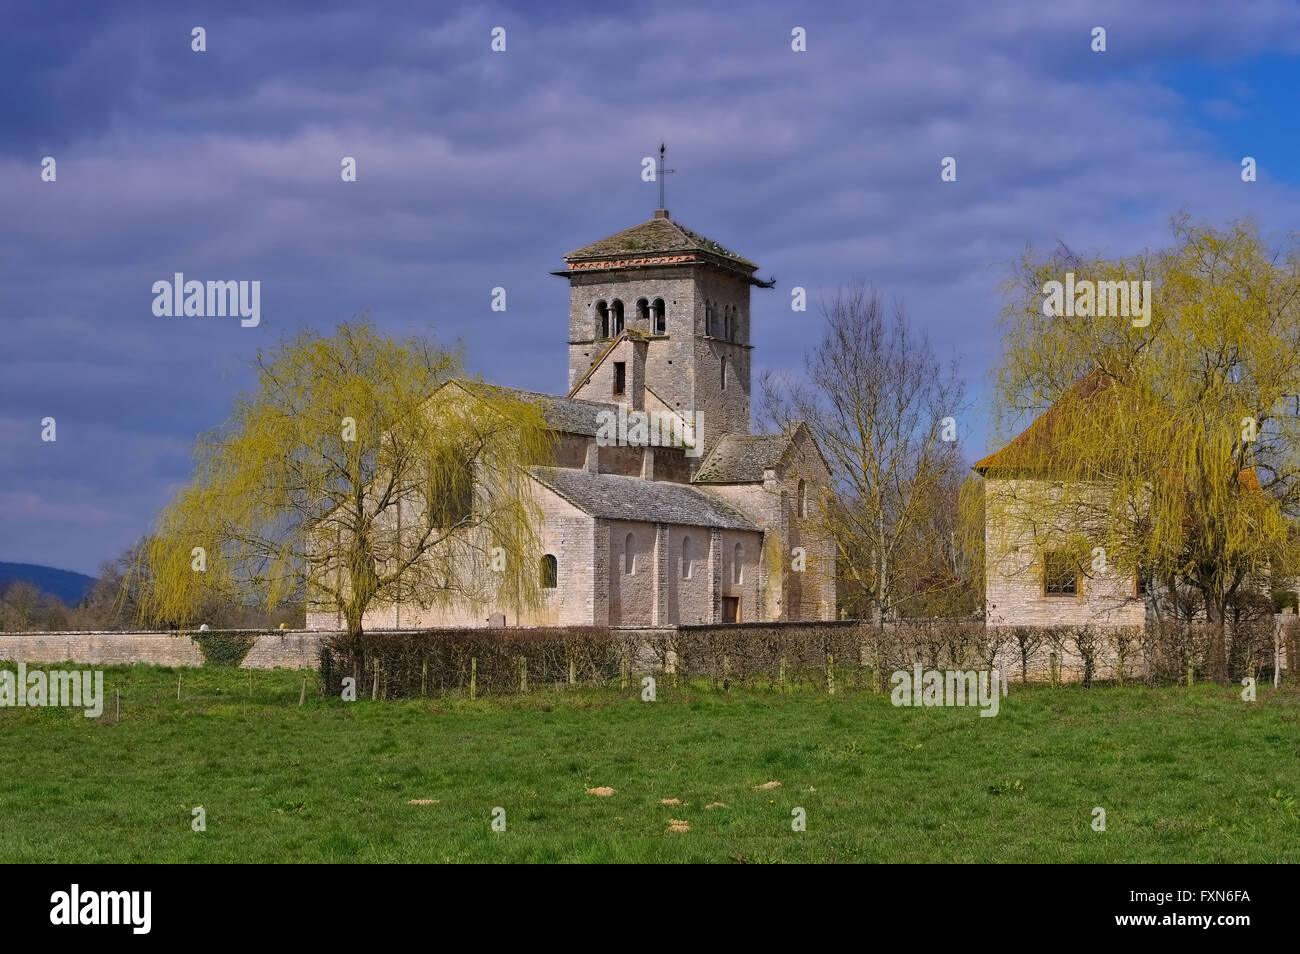 Romanische Kirche in Malay Burgund, Frankreich - romanica Chiesa malese in Borgogna, Francia Foto Stock